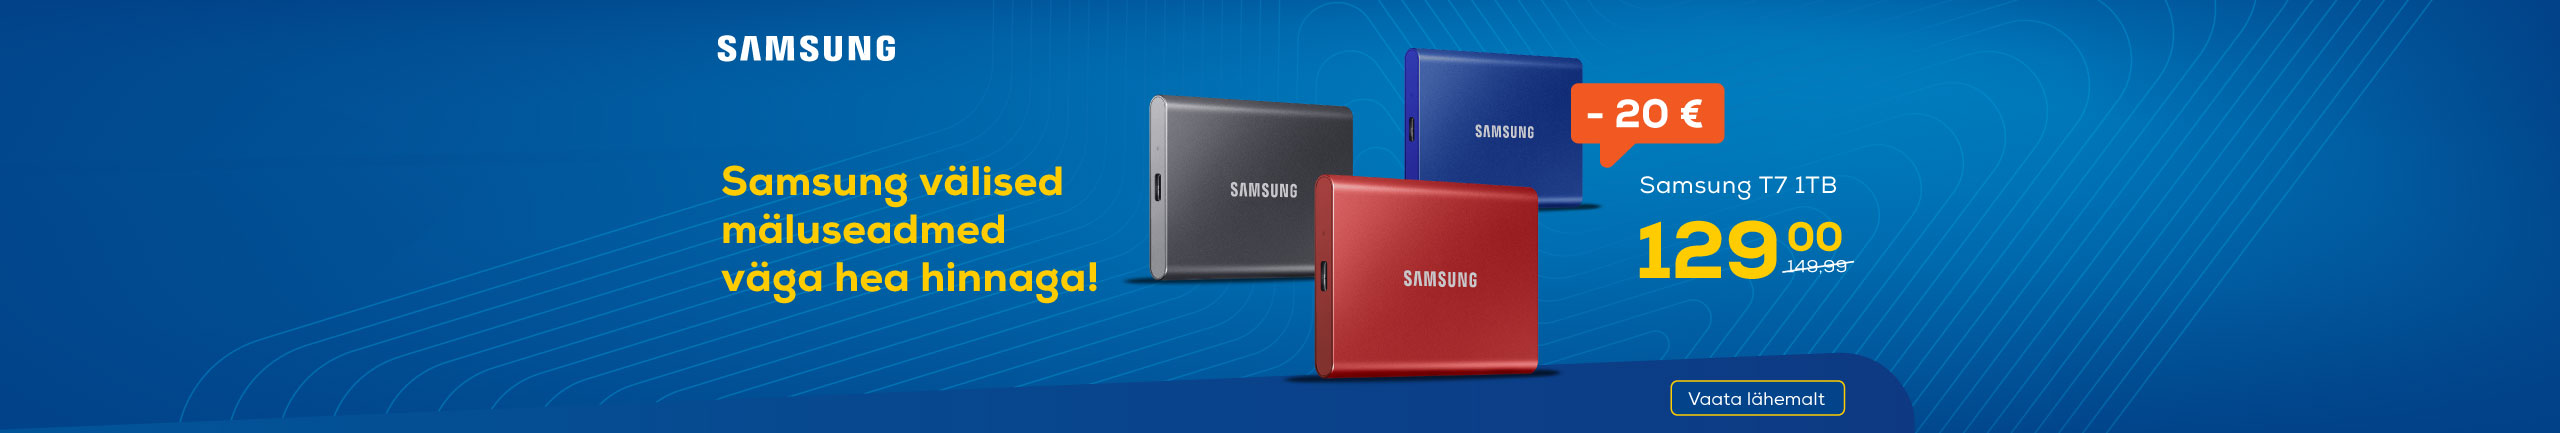 Samsung external SSD sale!